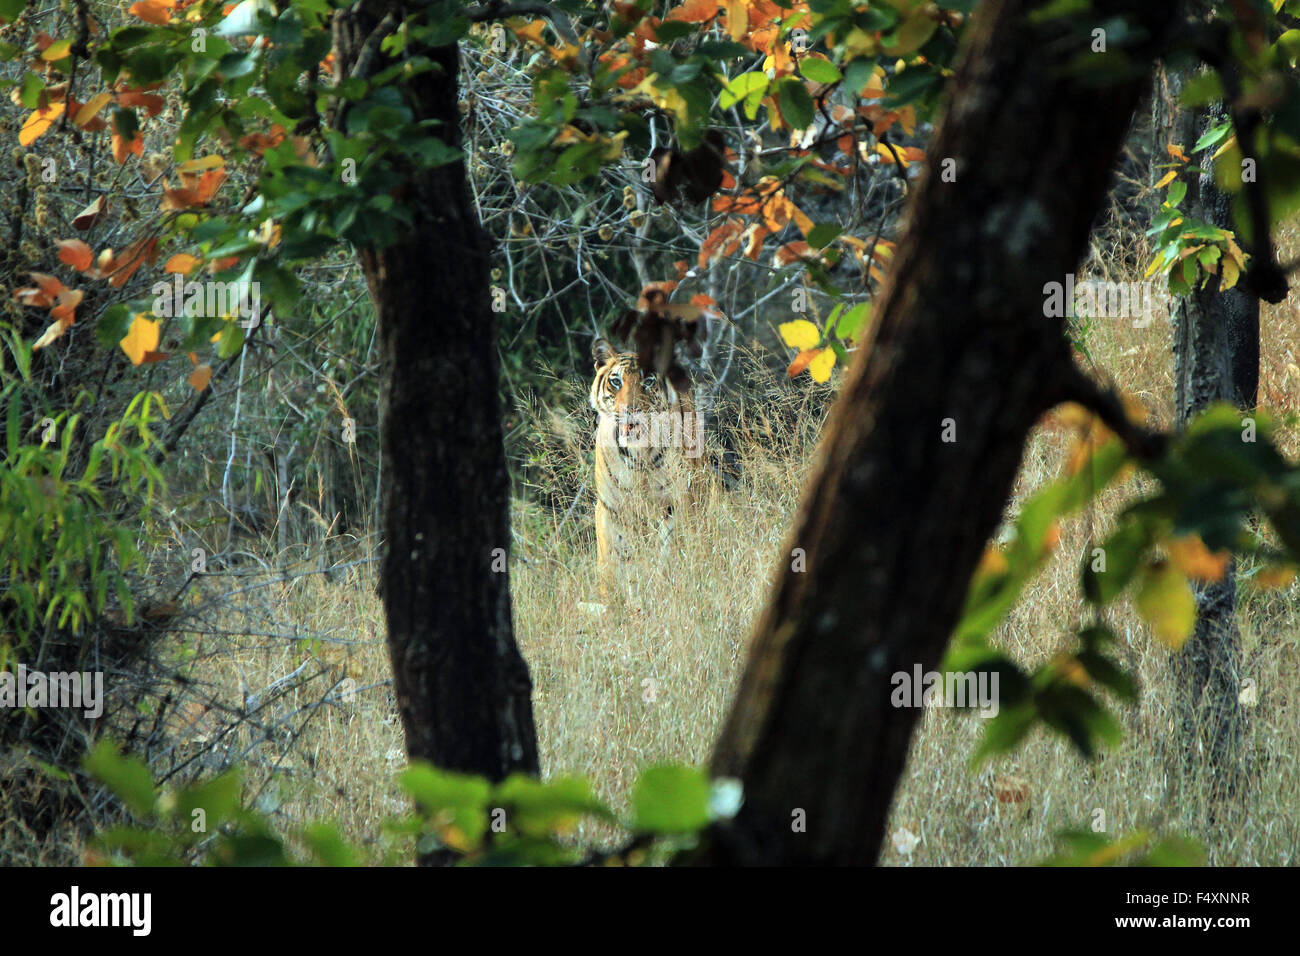 Tigre del Bengala (Panthera Tigris Tigris) di vegetazione, guardando nella telecamera. Bandhavgarh, India Foto Stock